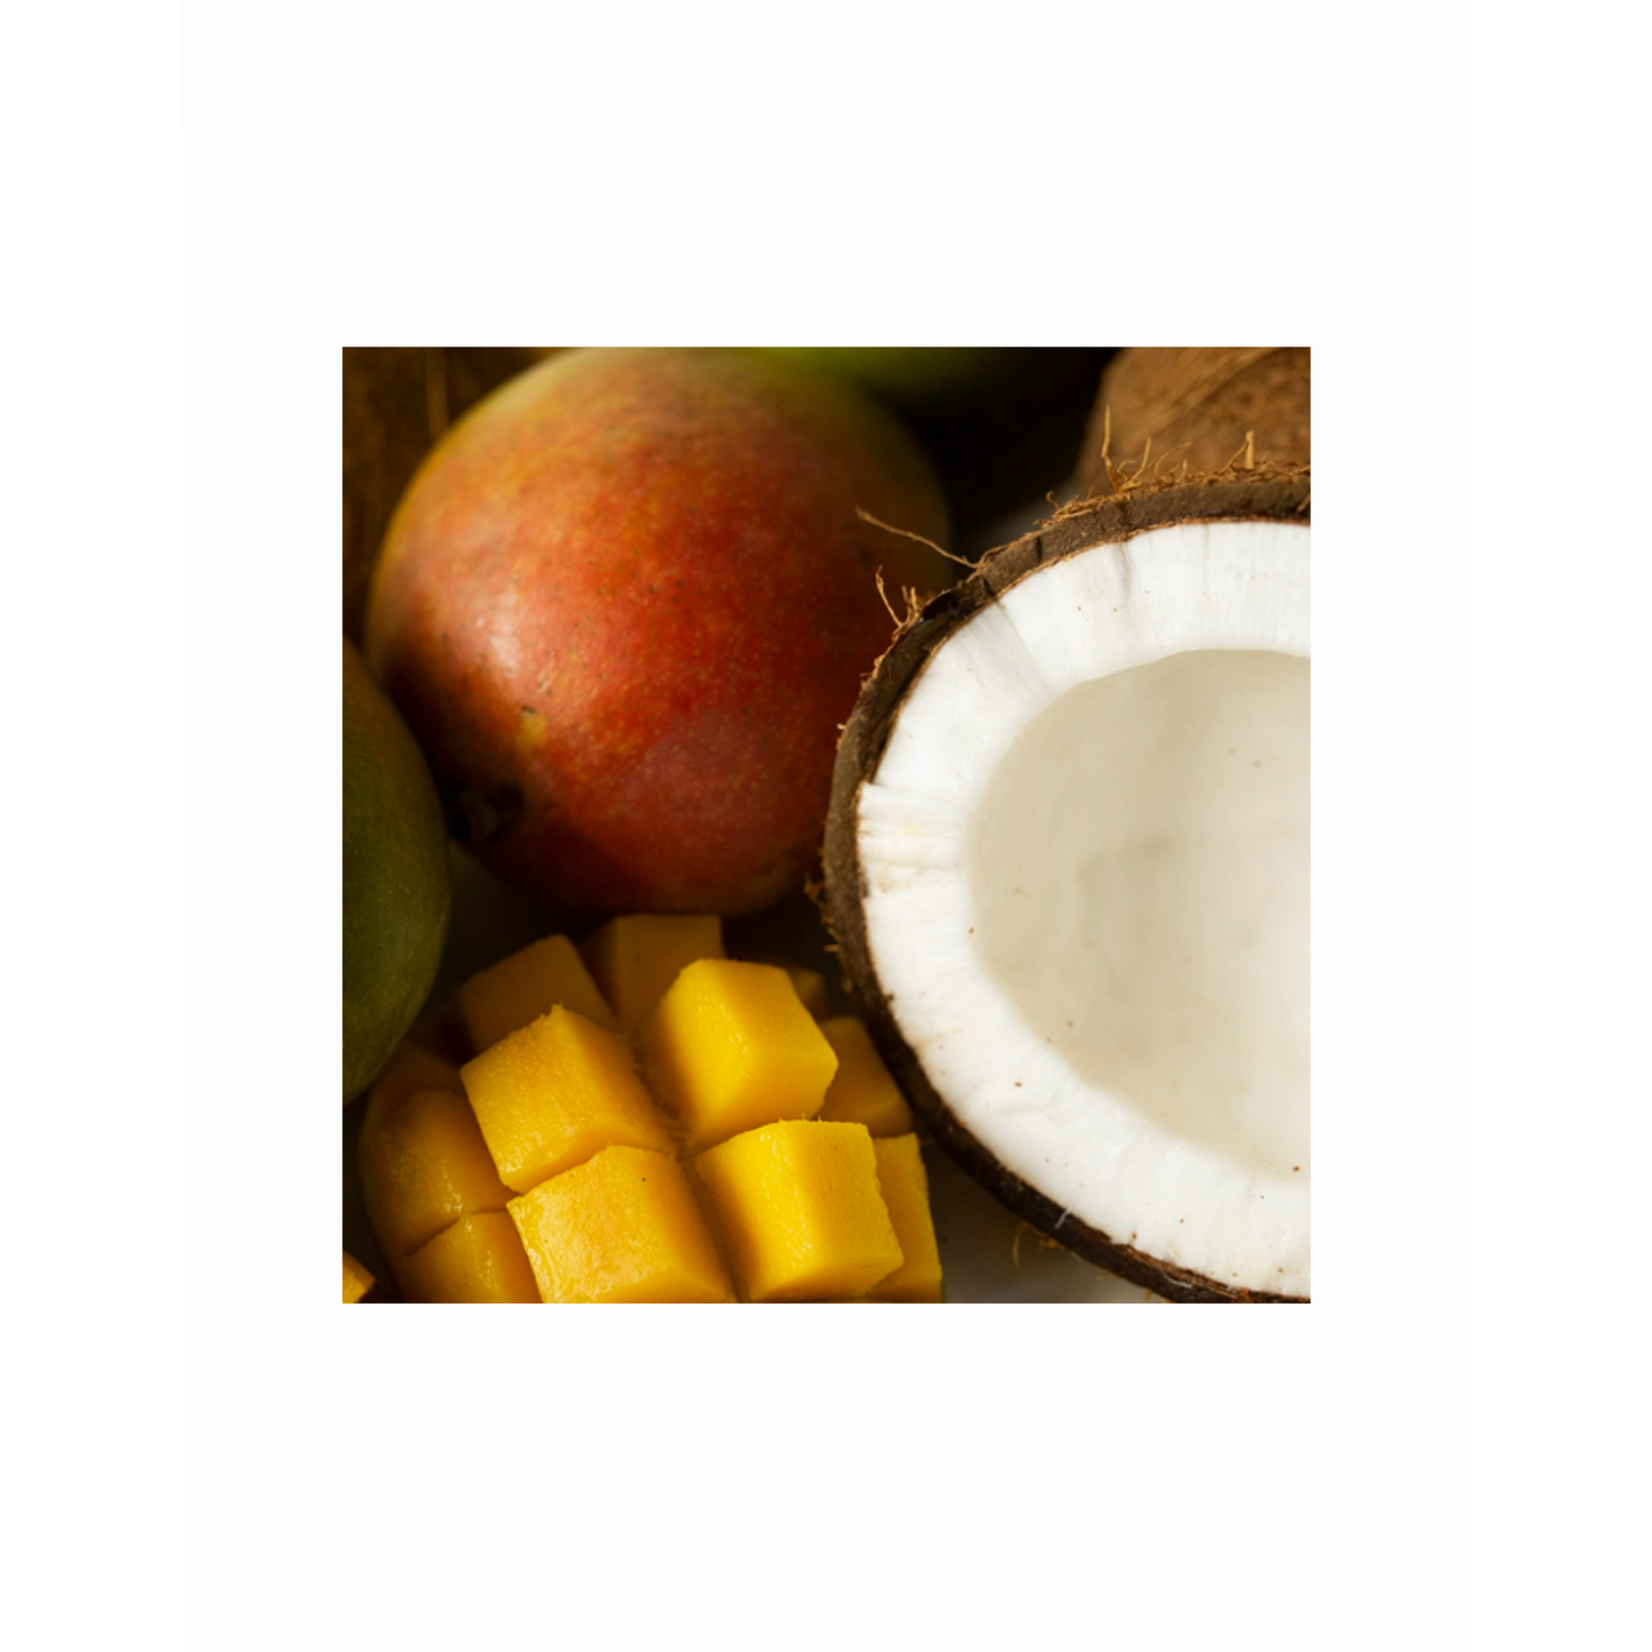 Soy-Blend Wax Melt - Mango & Coconut Milk